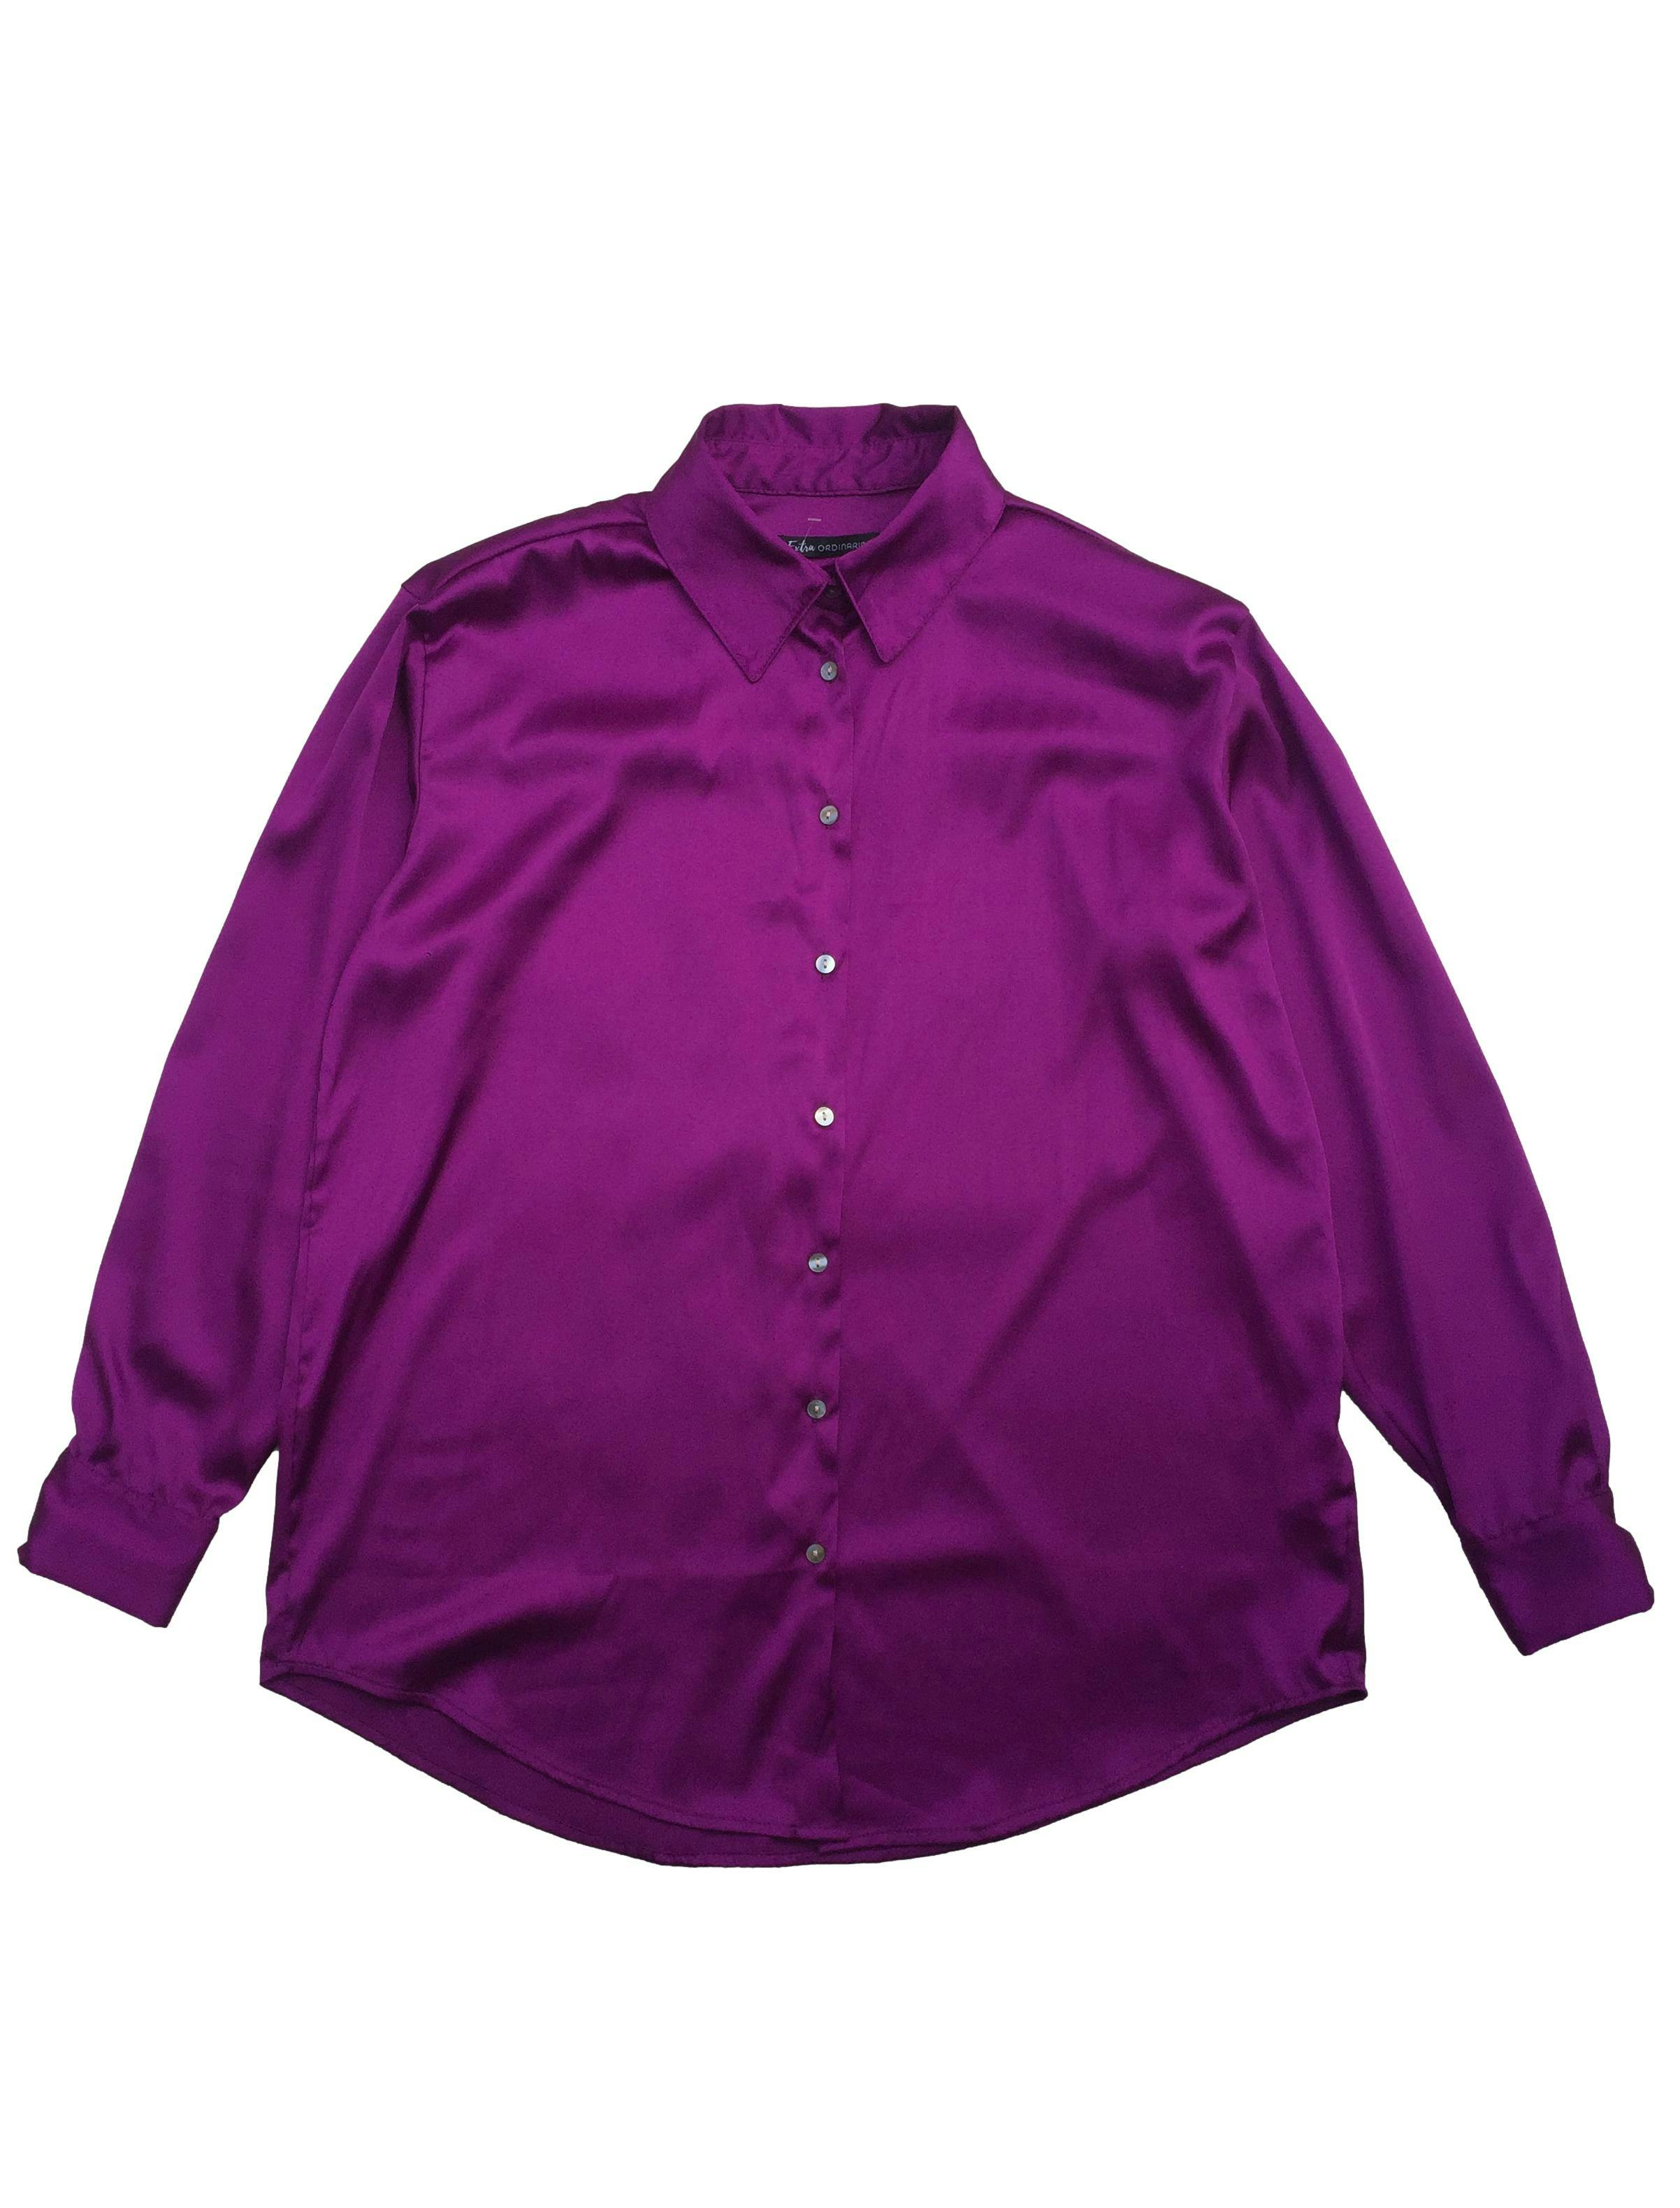 Blusa violeta satinada, botones delanteros. Busto: 112cm, Largo: 73cm